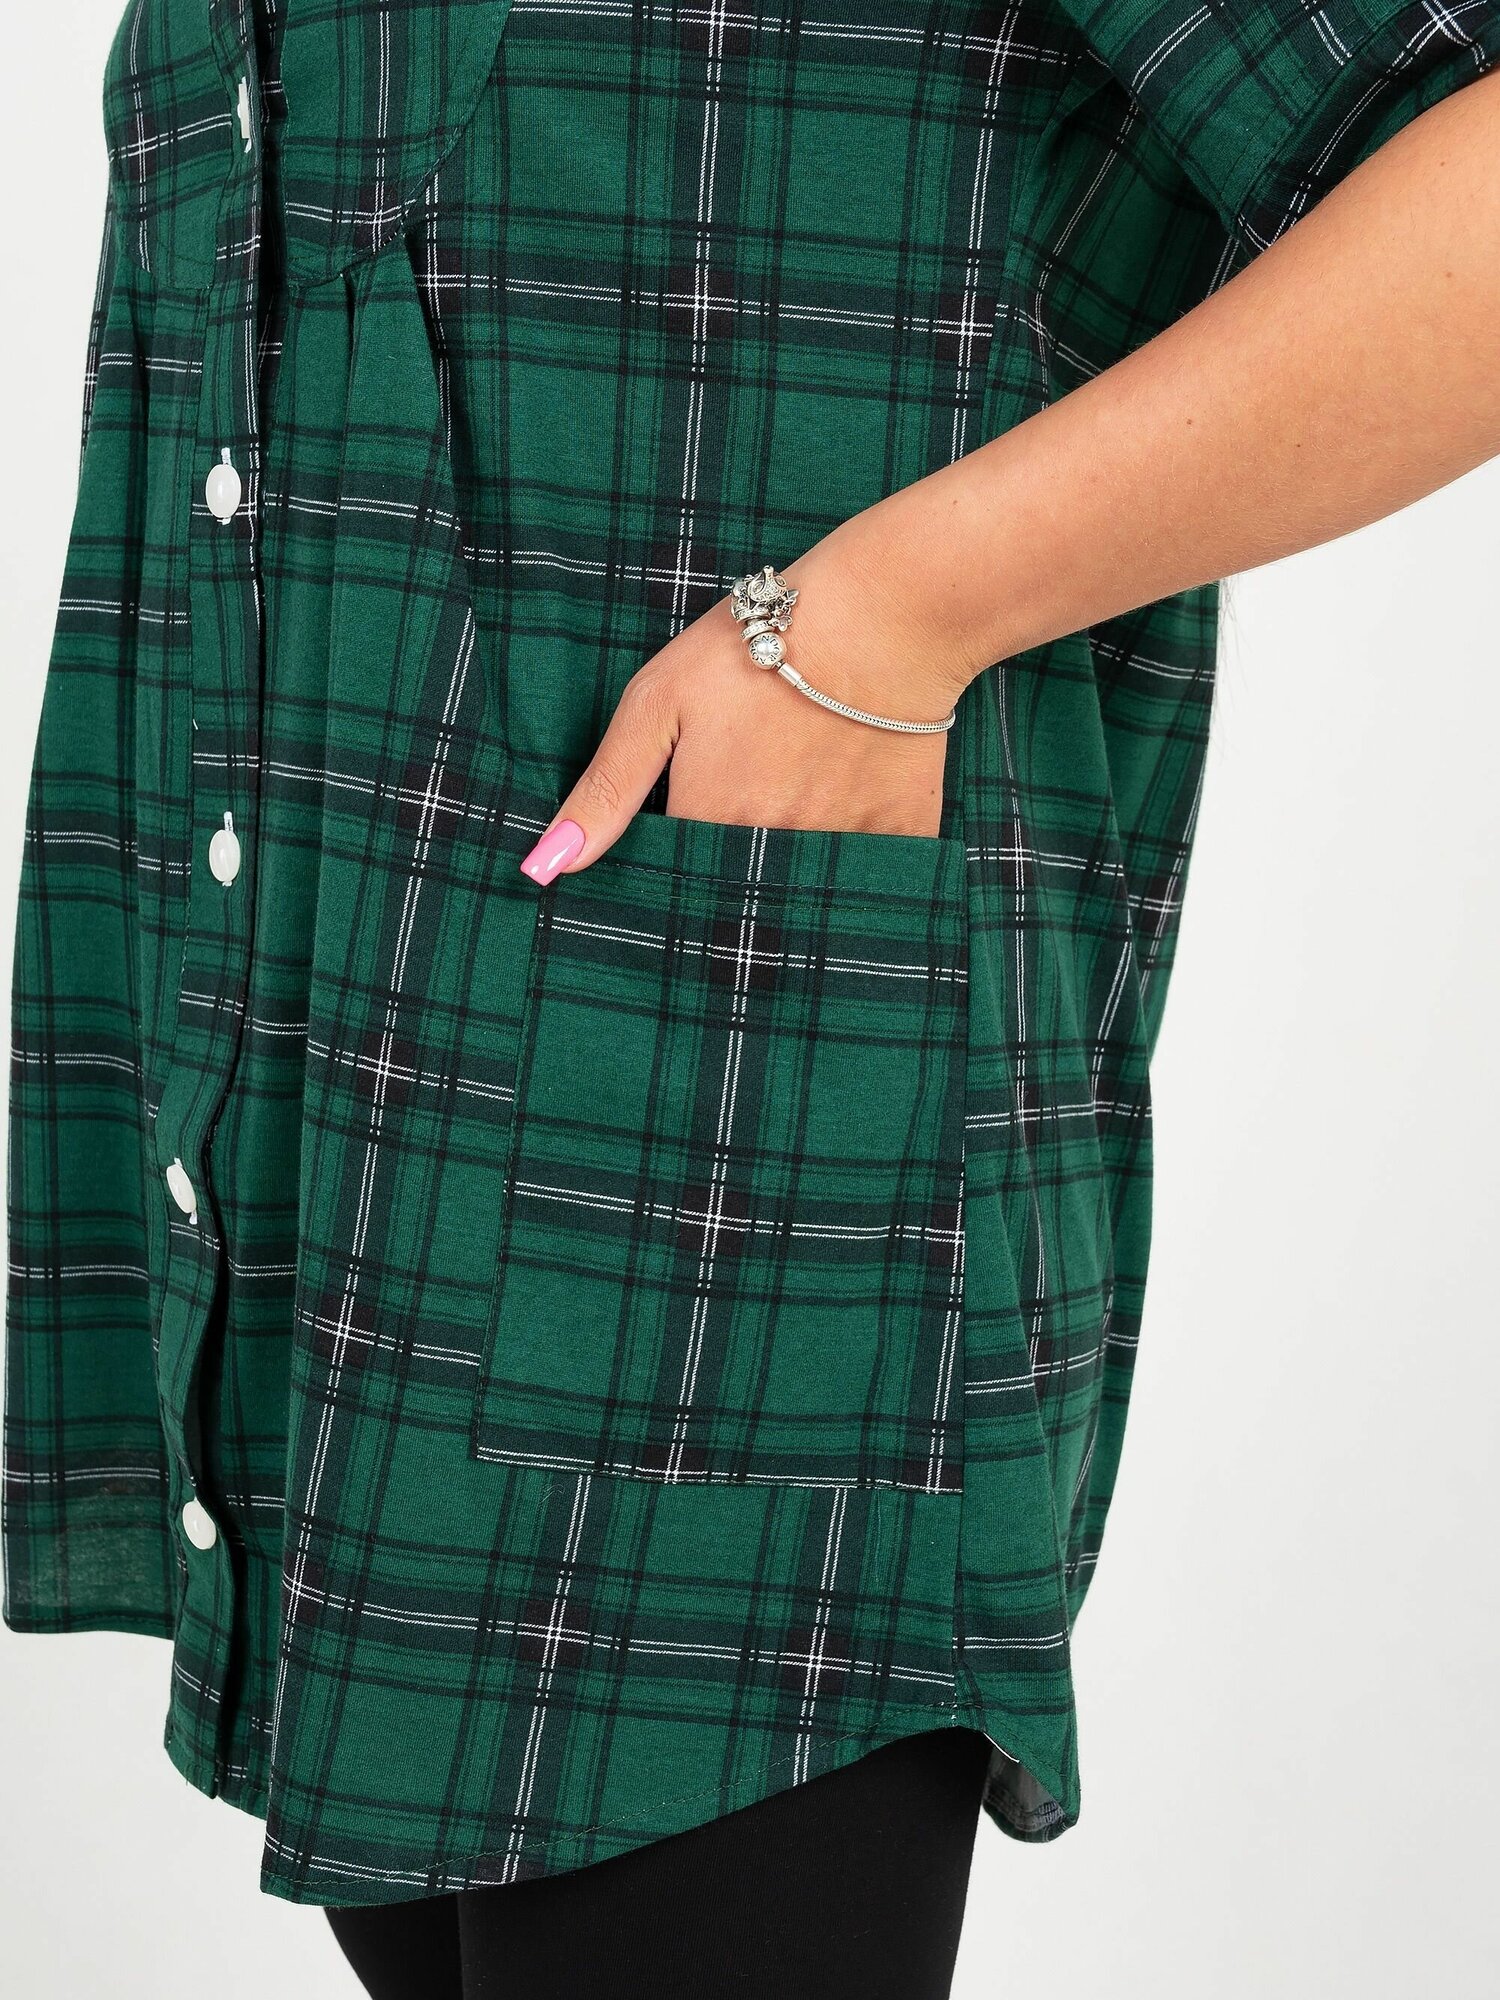 Туника Трикотажные сезоны, короткий рукав, карманы, размер 62, зеленый - фотография № 6